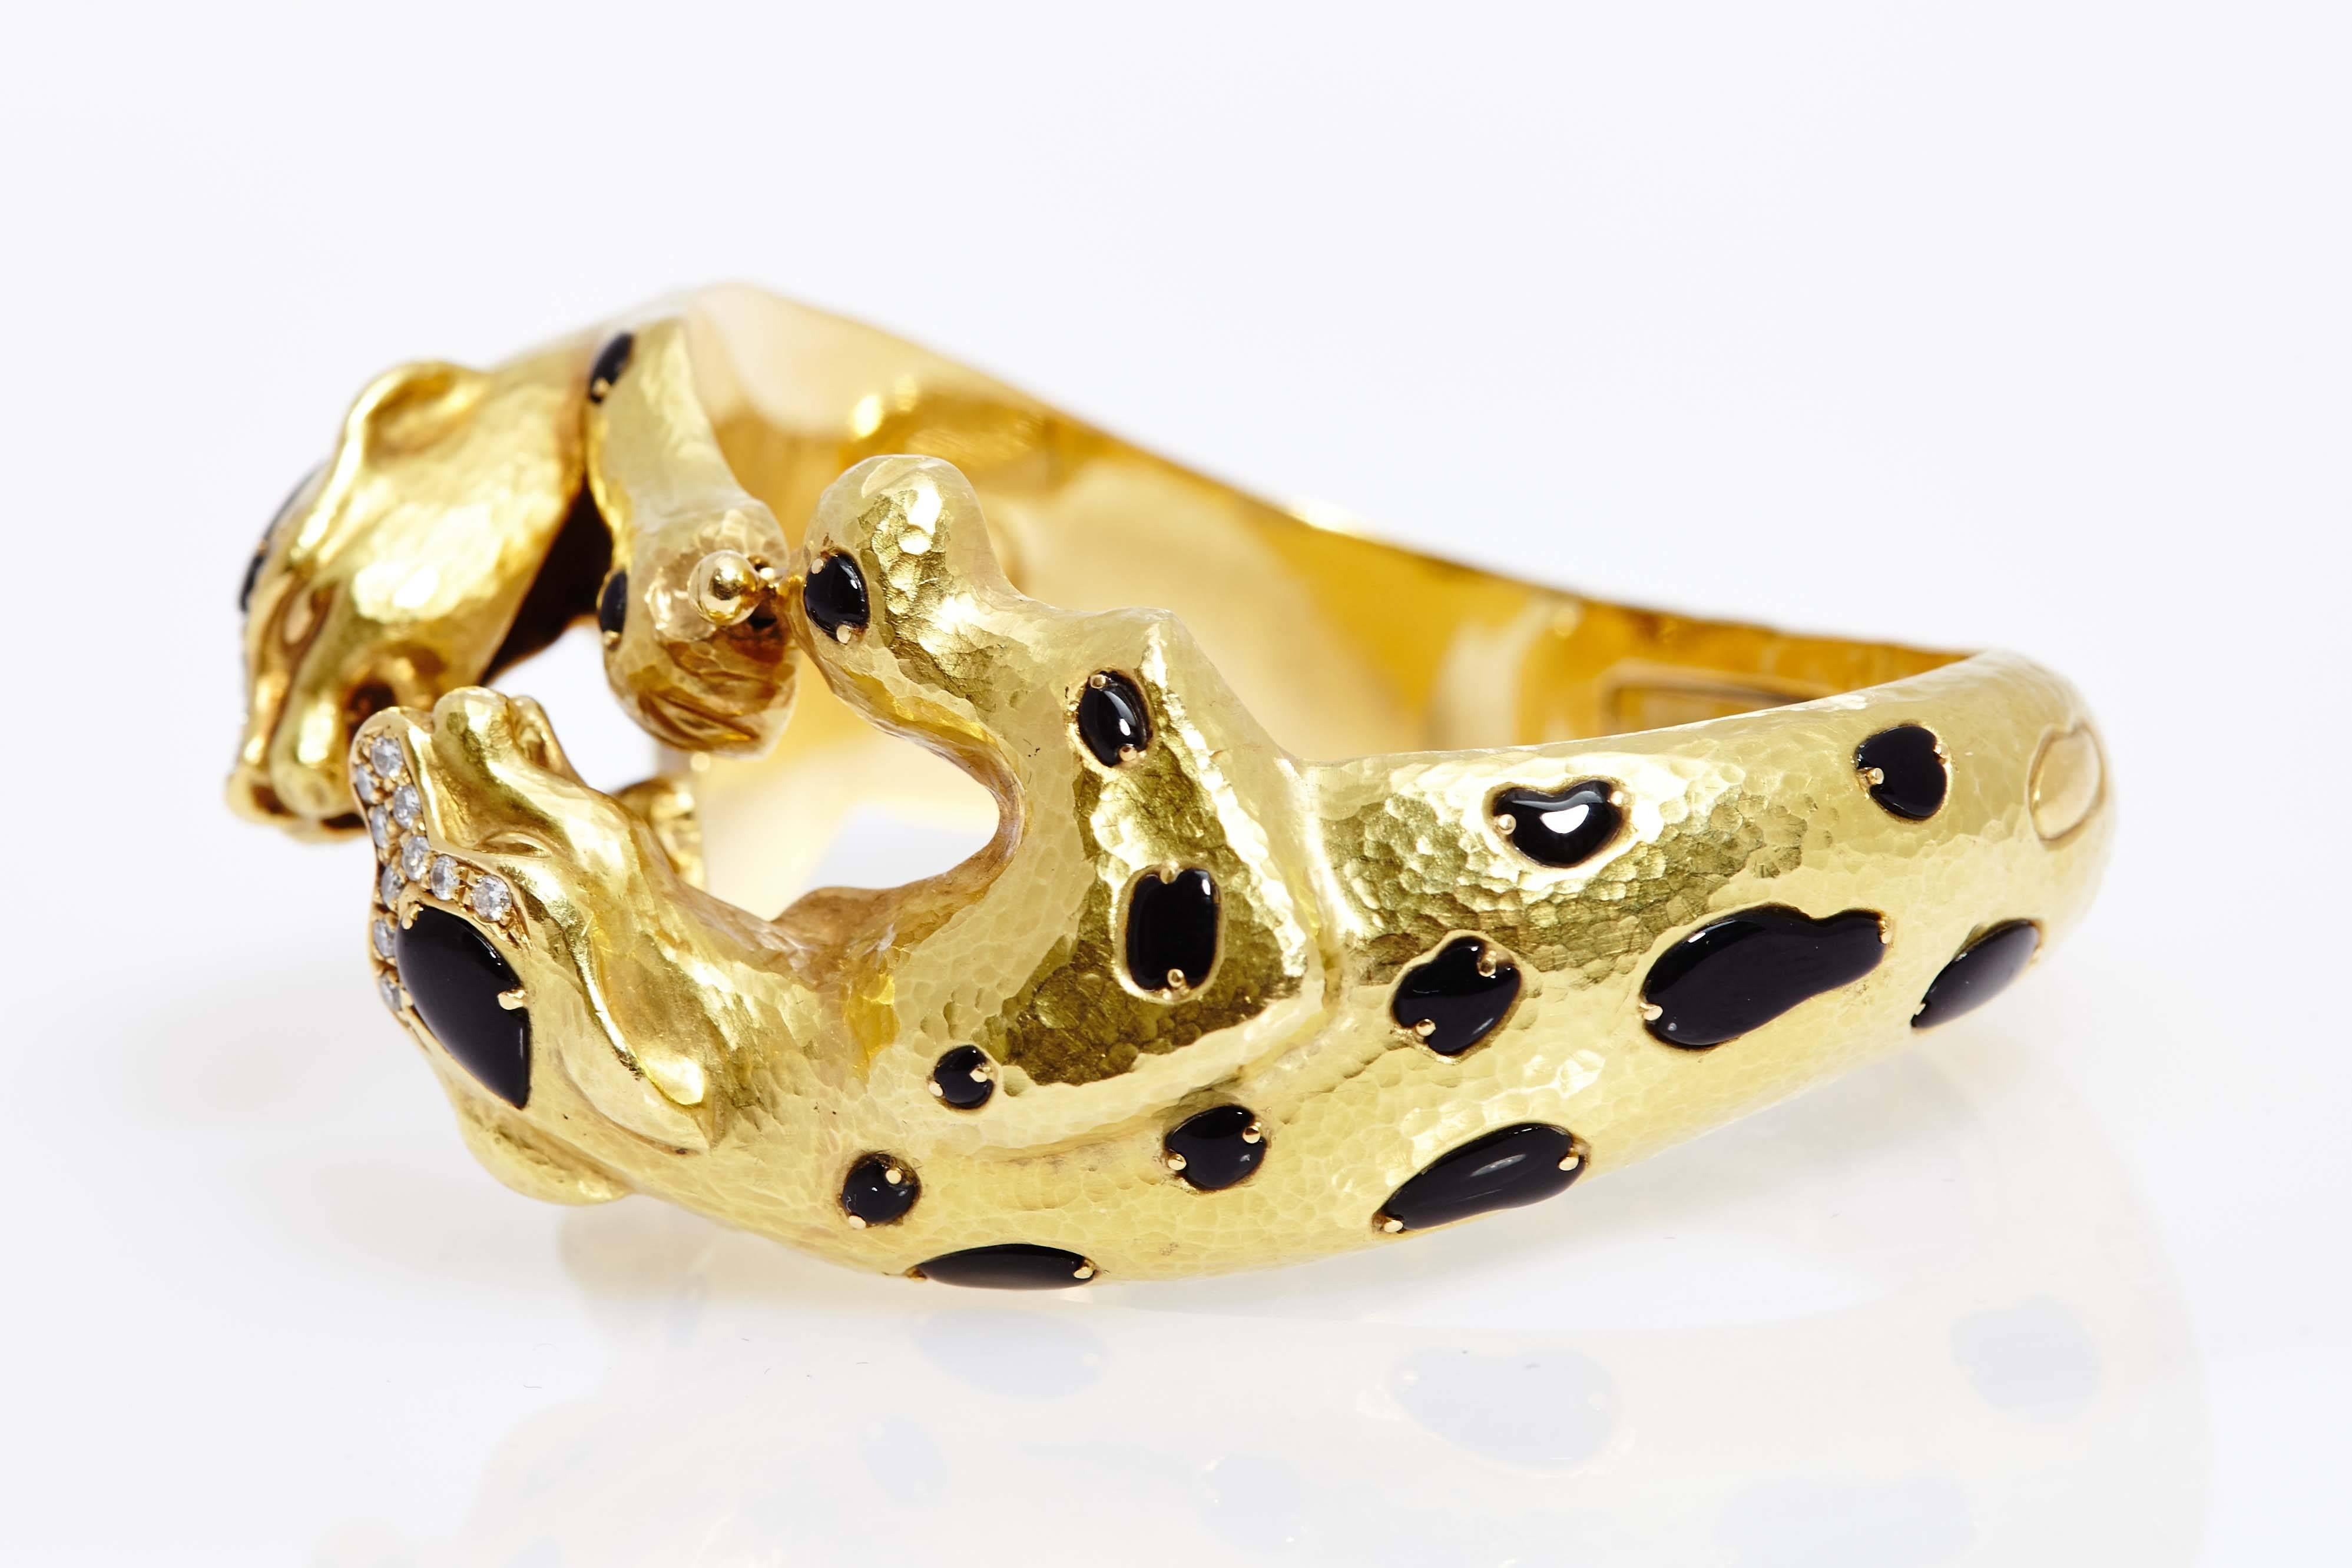 Bracelet animalier en or, onyx et diamants représentant deux léopards en combat. Fabriqué en Italie, vers 1970. 

